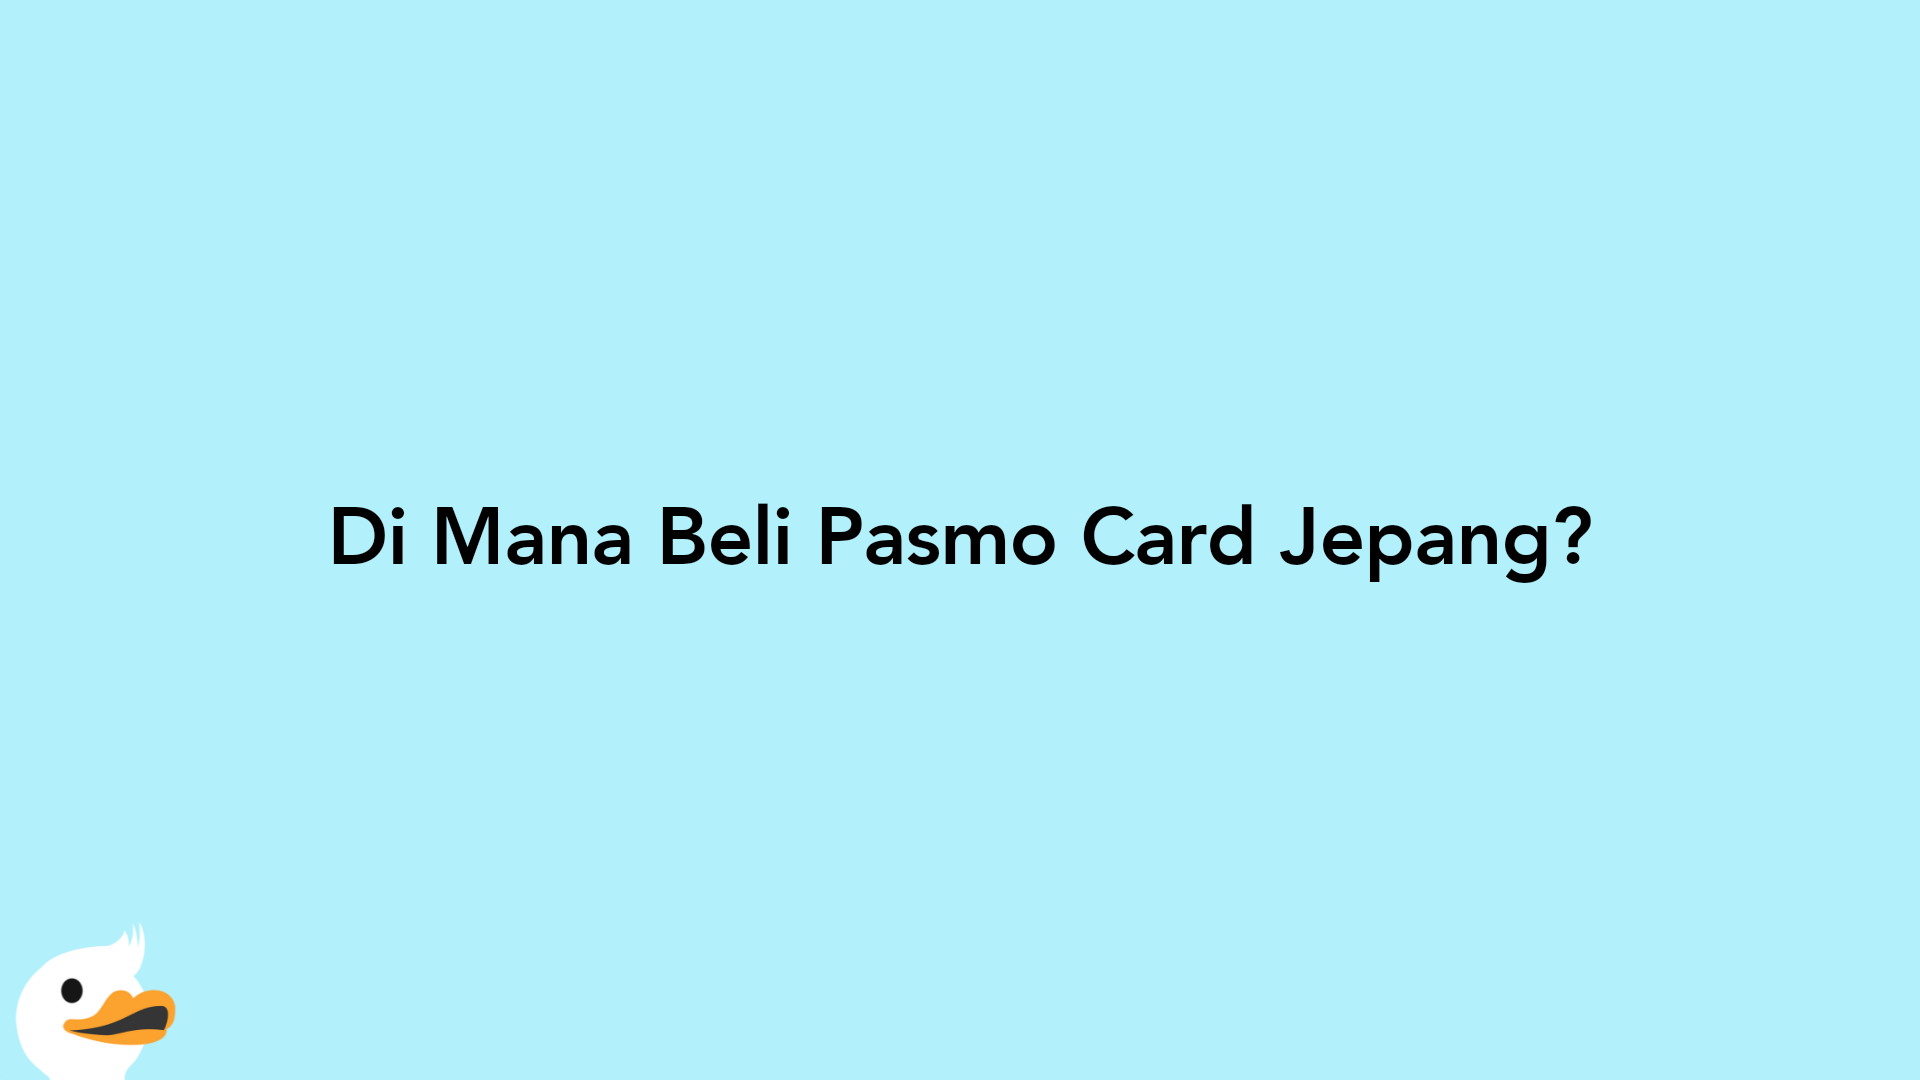 Di Mana Beli Pasmo Card Jepang?